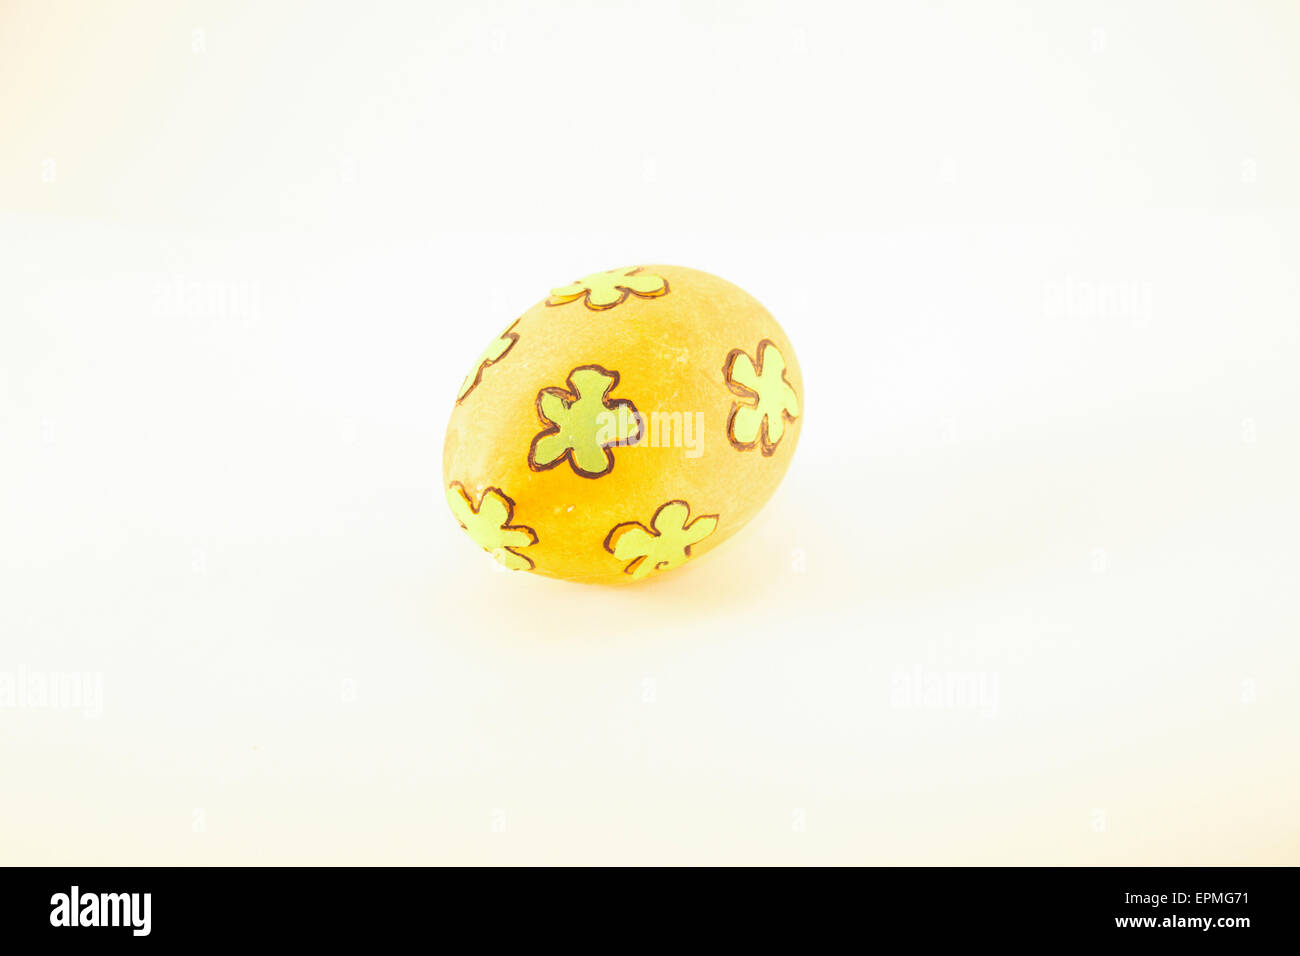 One orange easter egg, isolated on white background Stock Photo